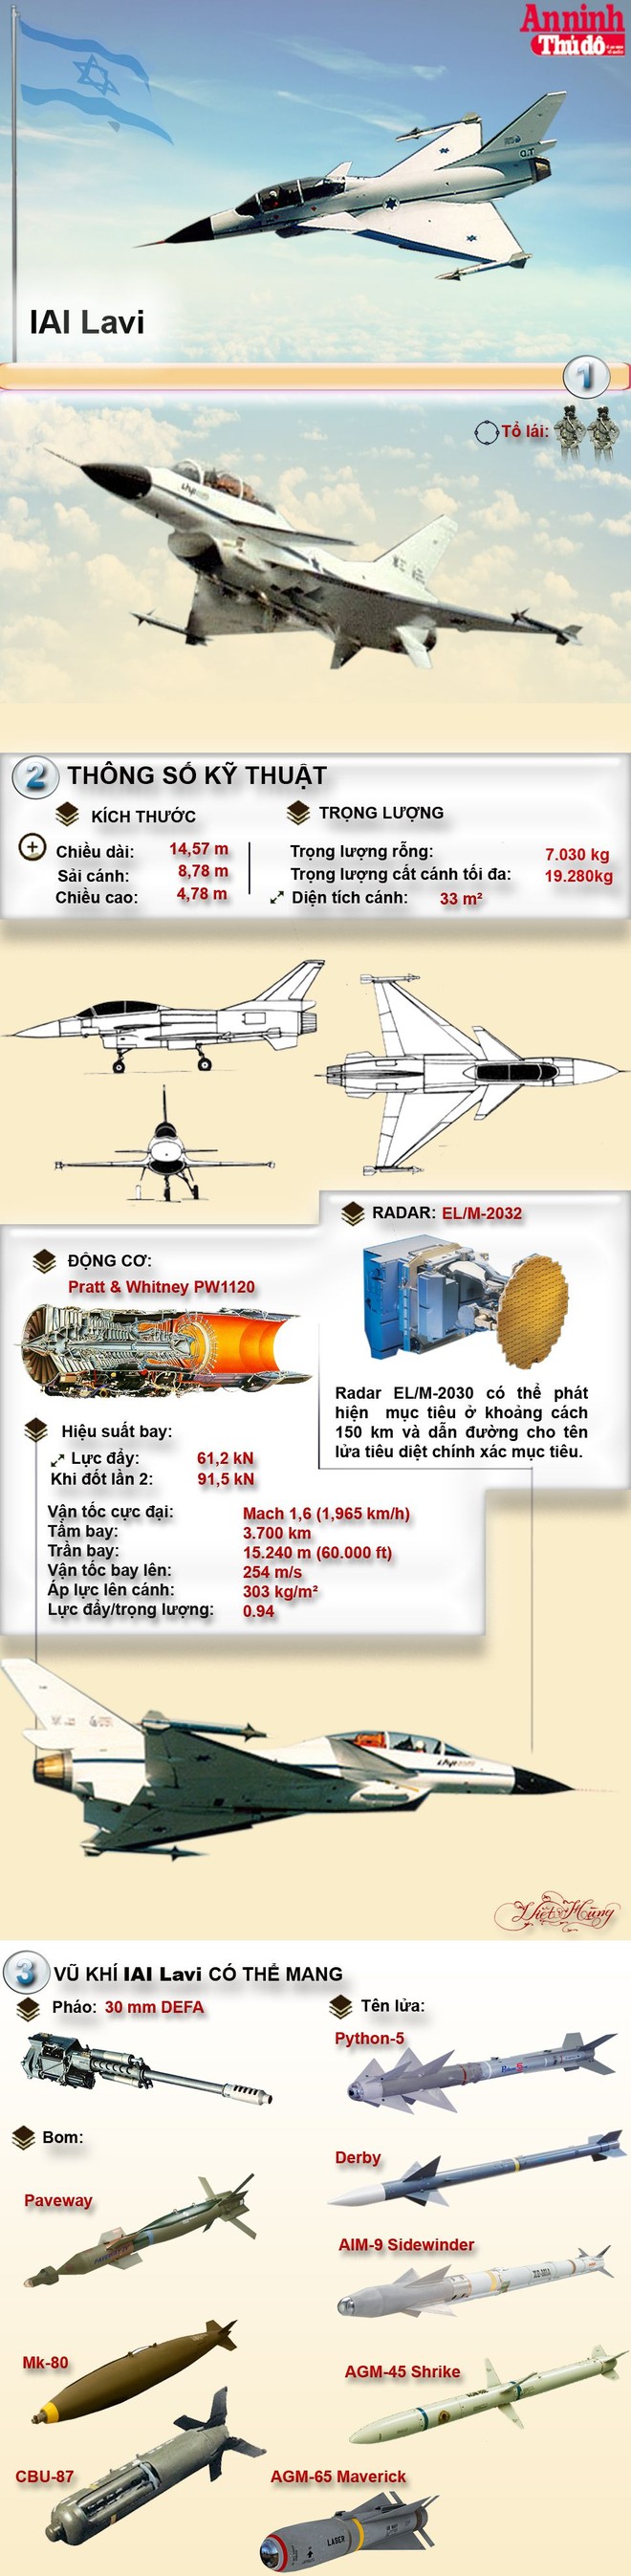 [Infographic] IAI Lavi-Siêu tiêm kích của Israel, tiền thân của J-10 Trung Quốc ảnh 1